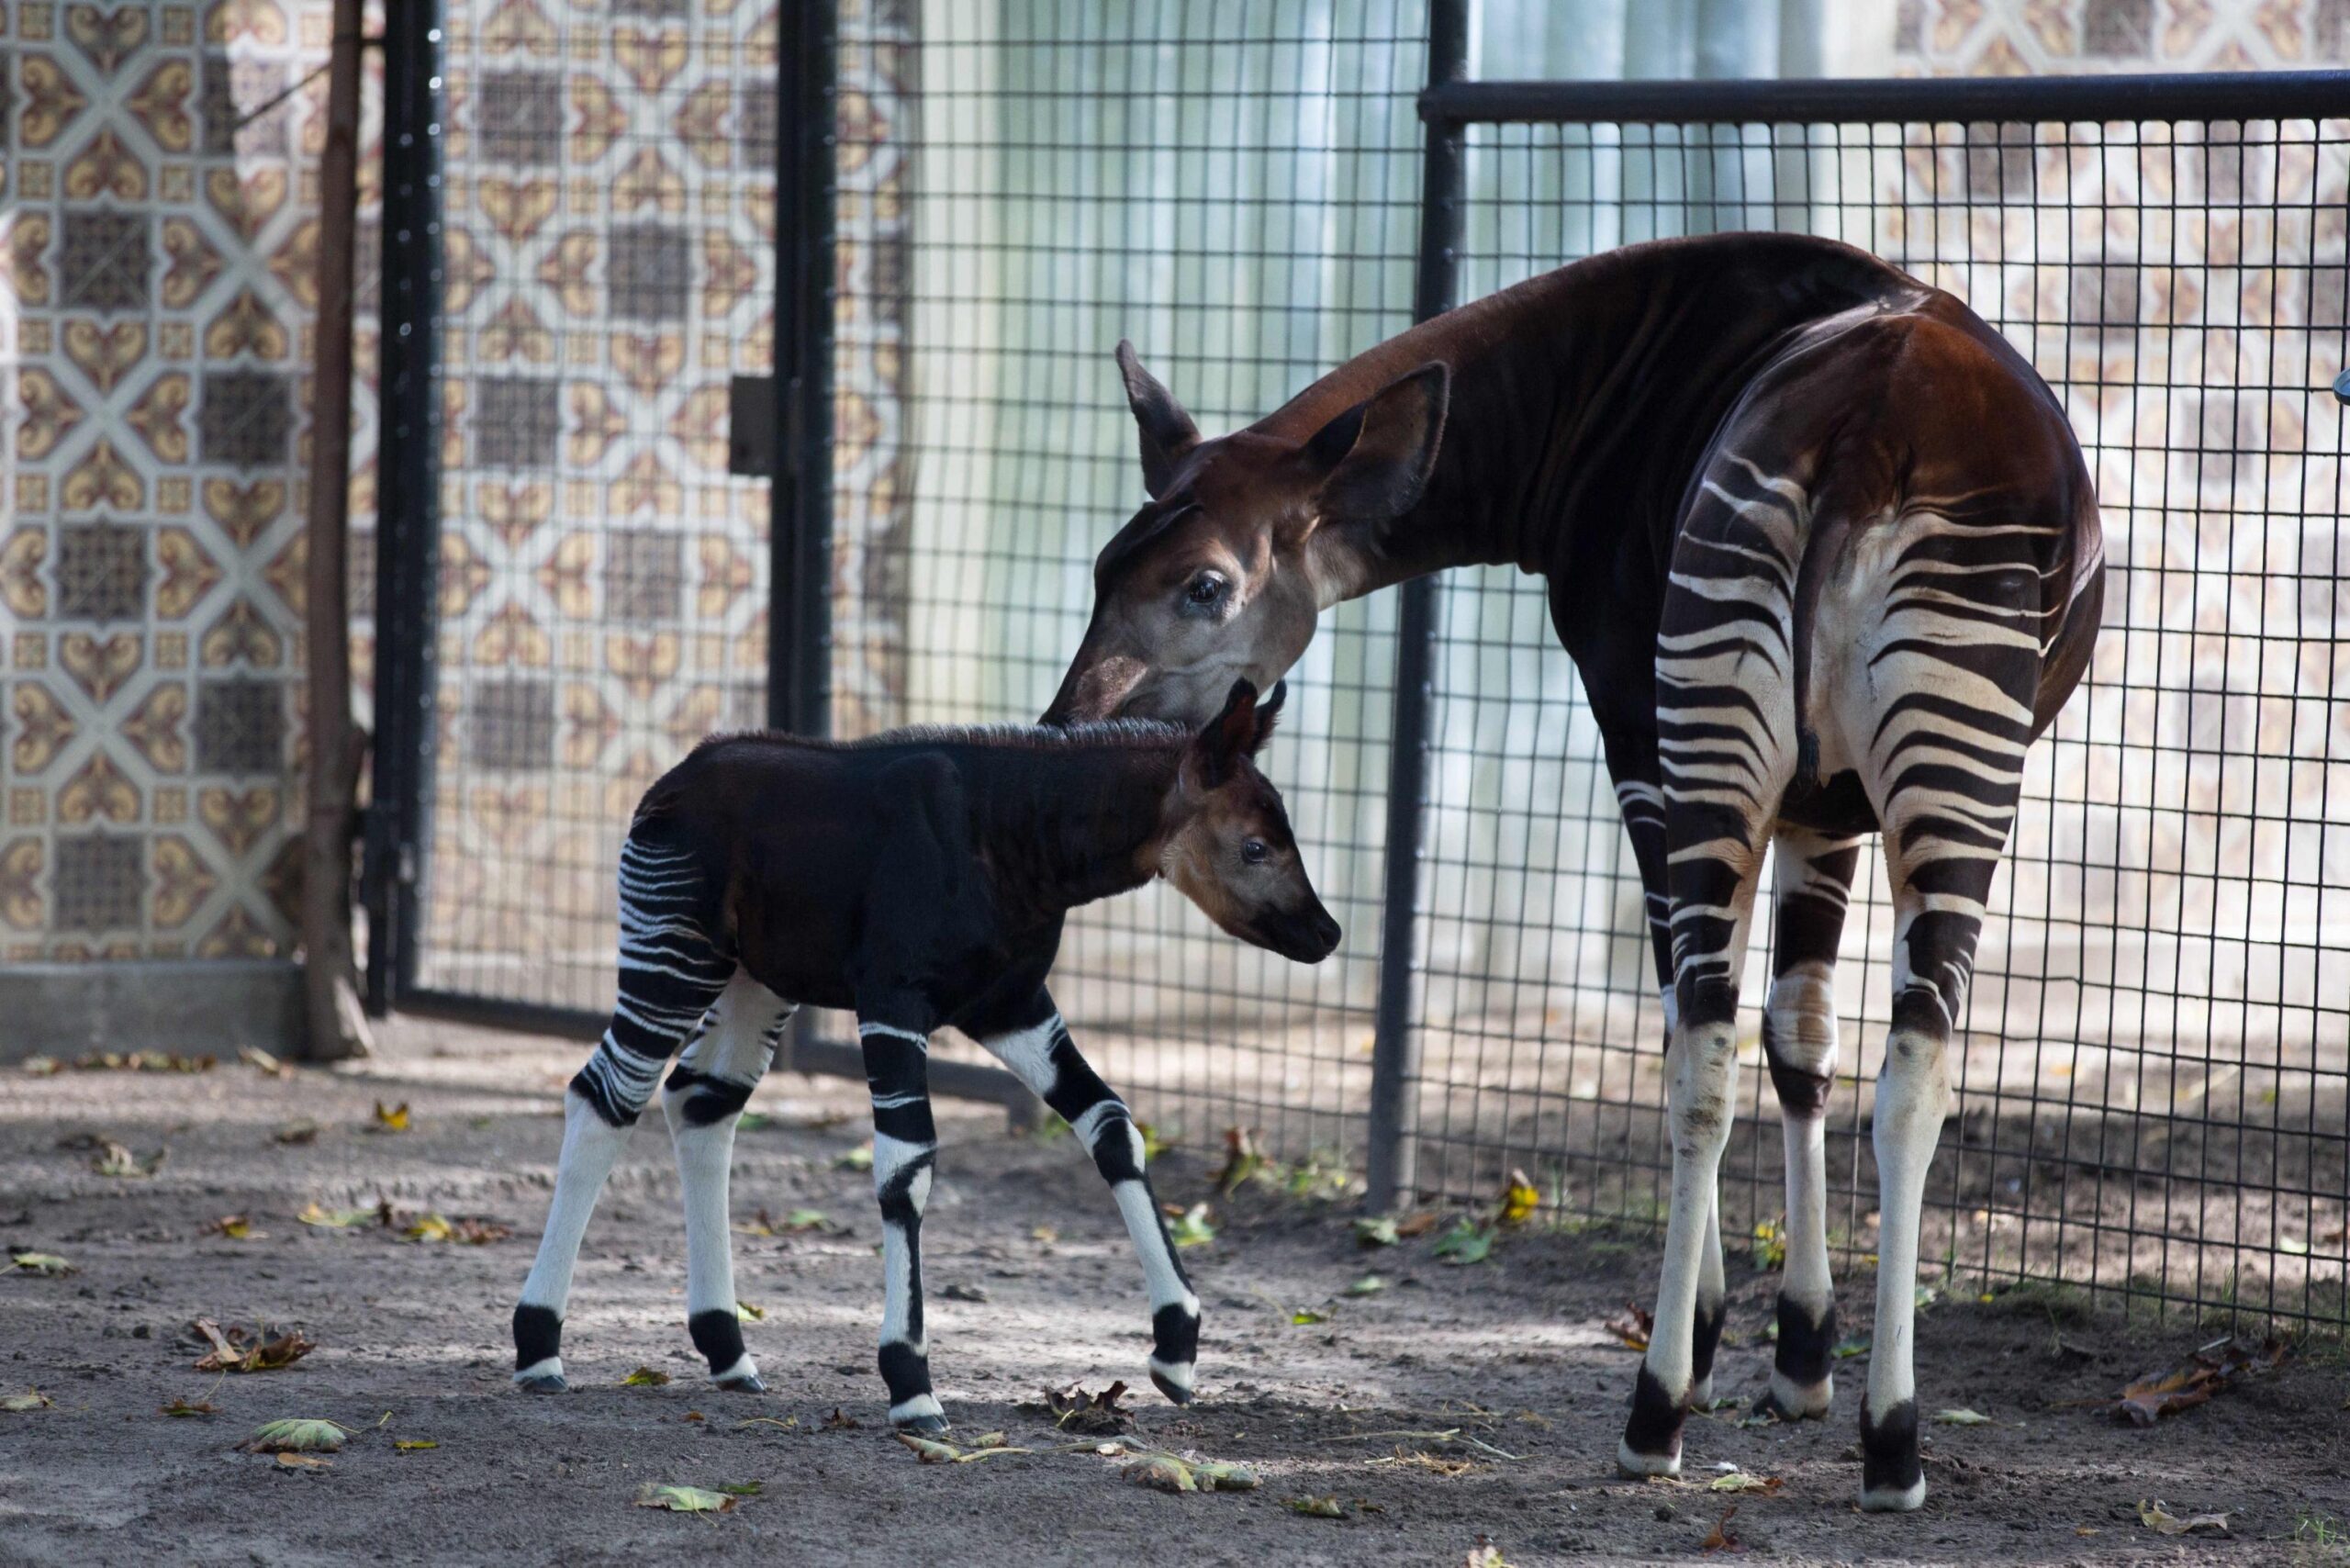 Okapi calf Nkosi in the Antwerp Zoo01